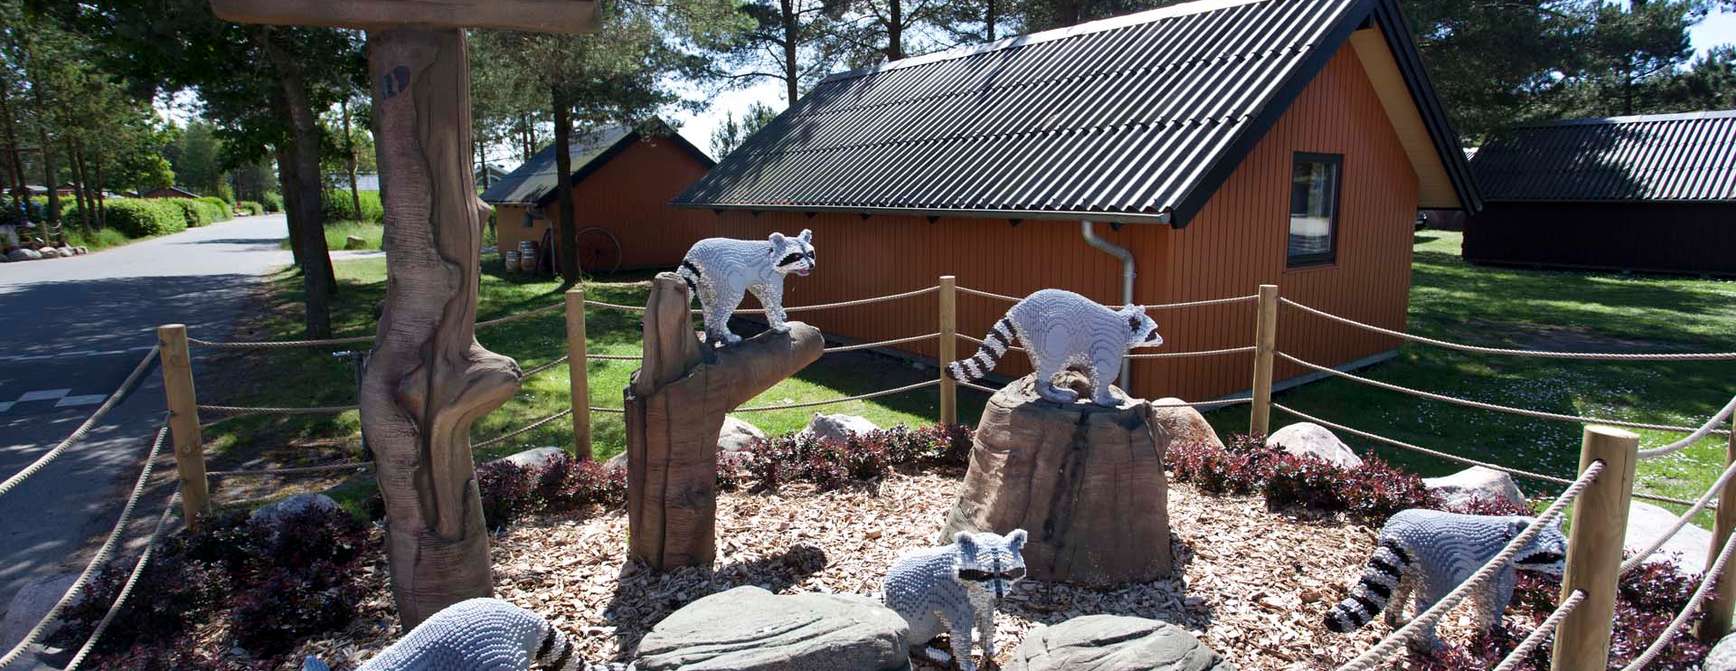 Utstilling av vaskebjørner i lego inngjerdet